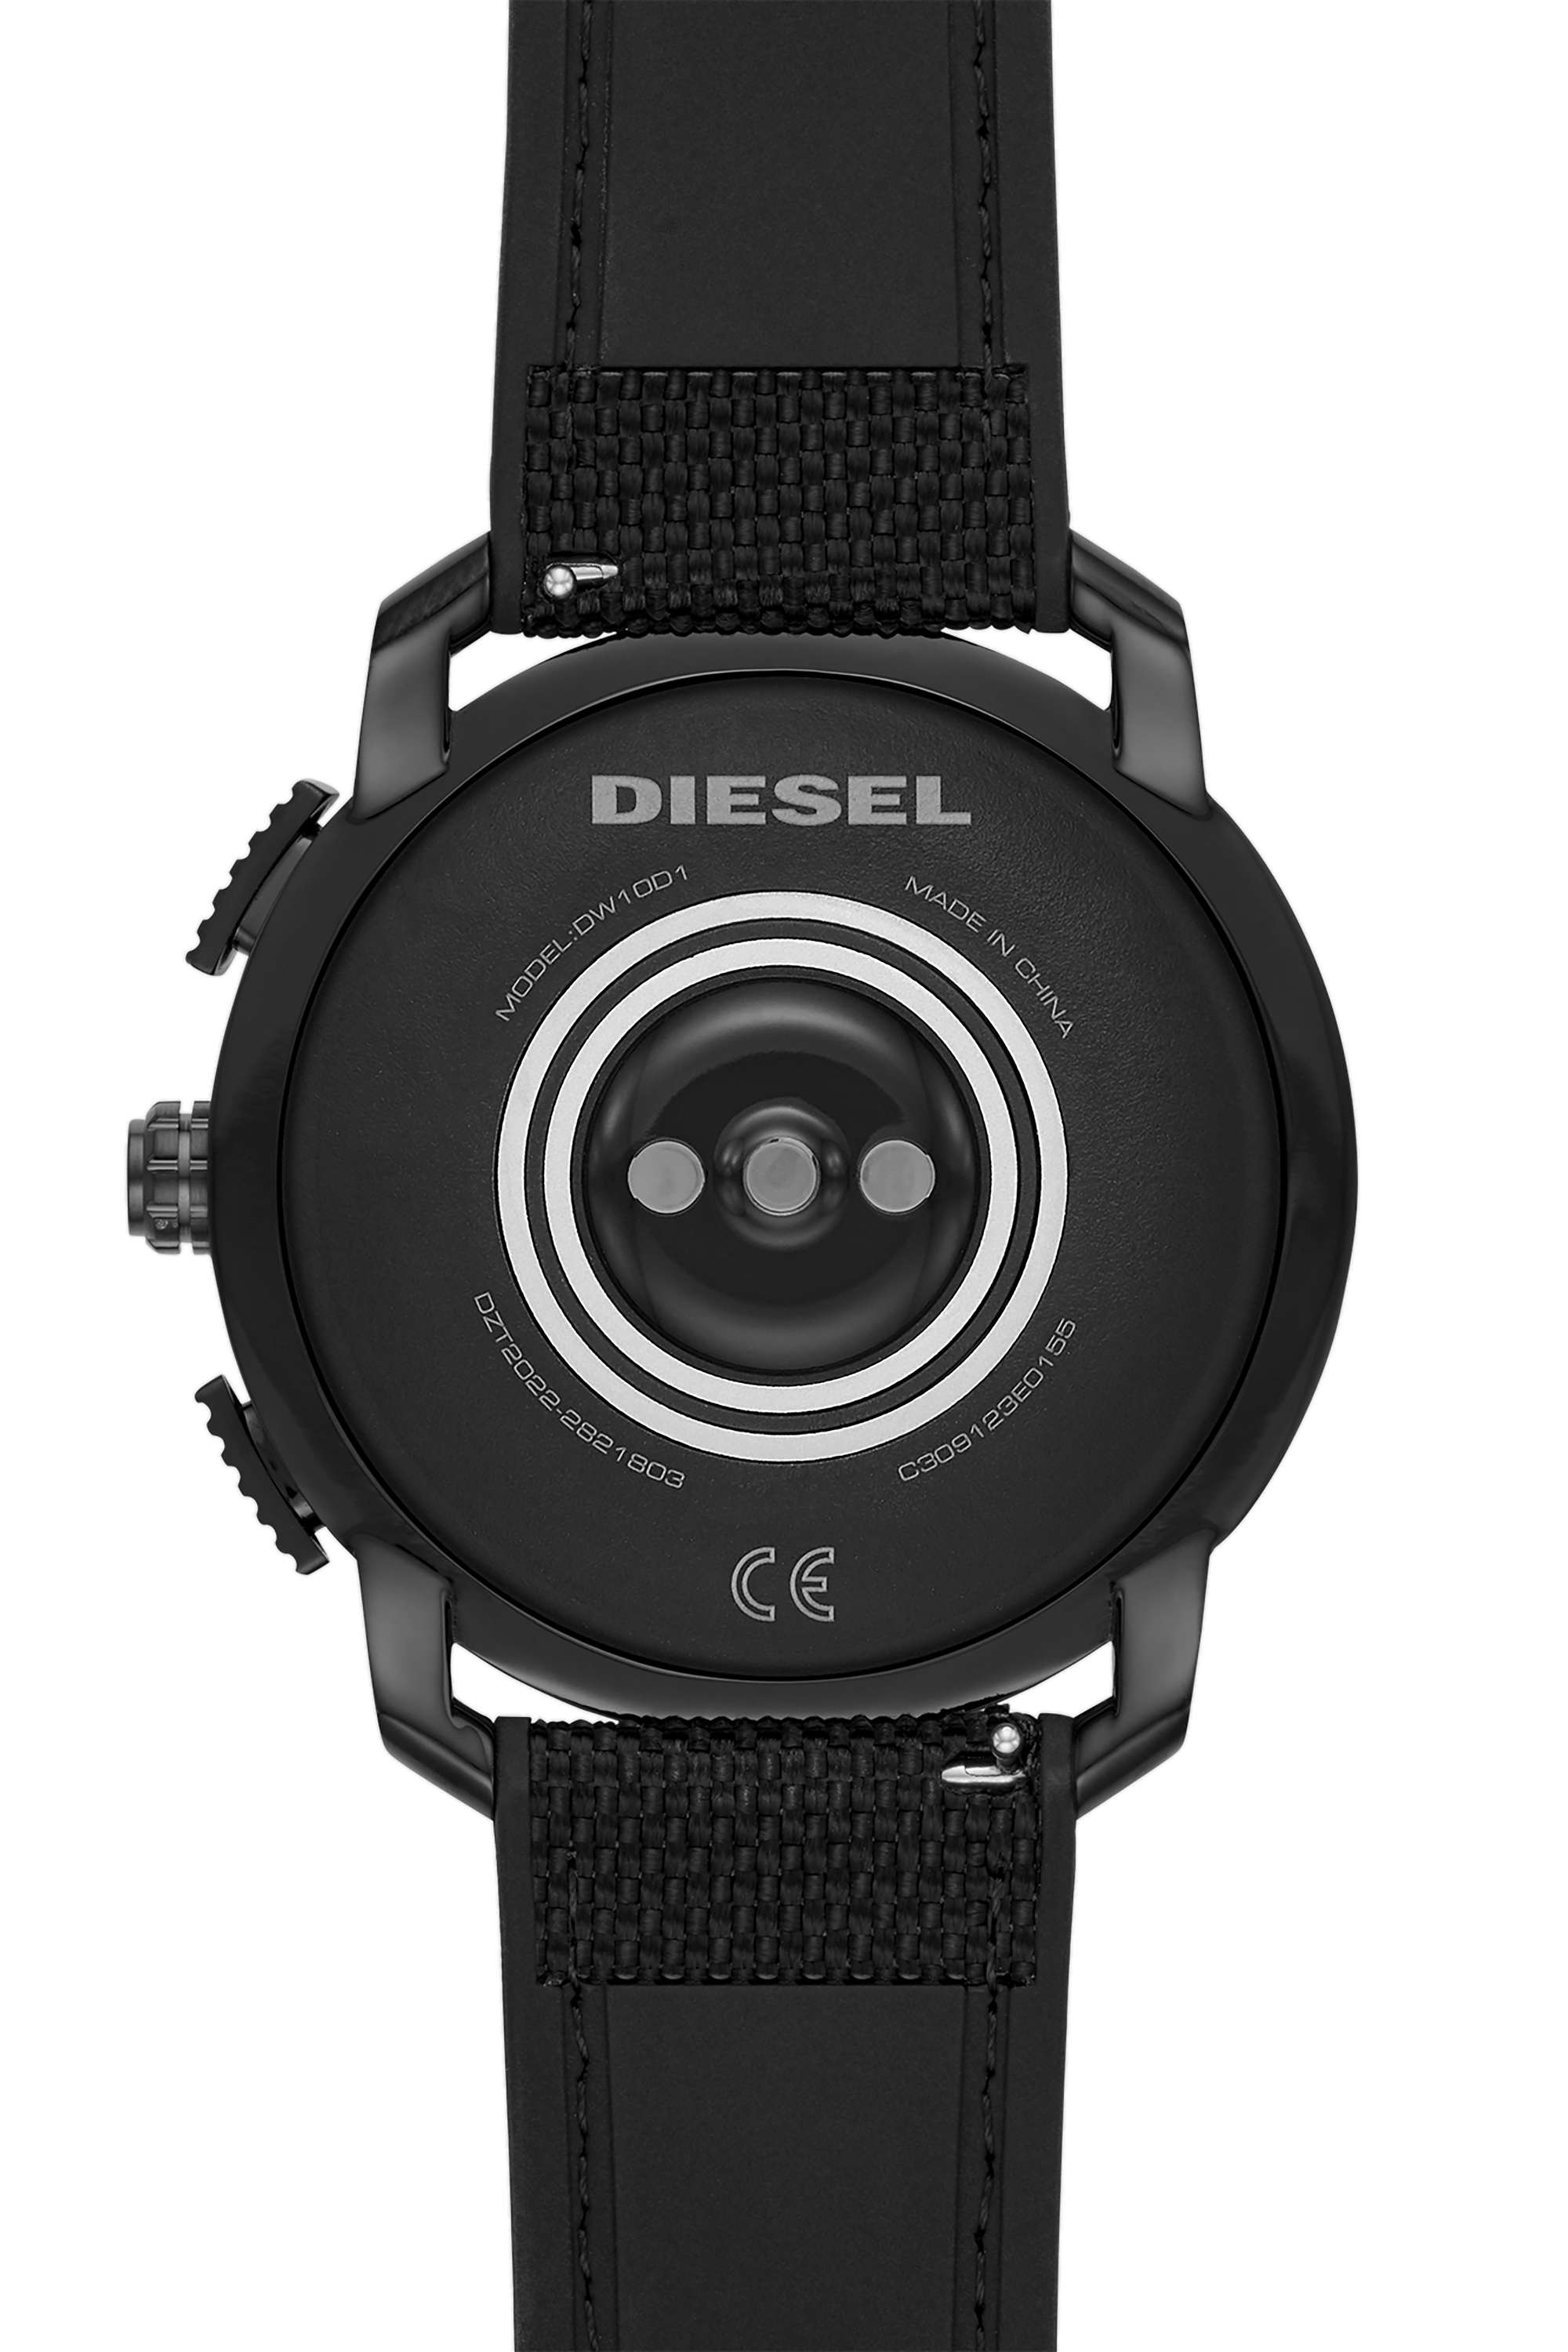 Diesel - DT2022, Black - Image 4